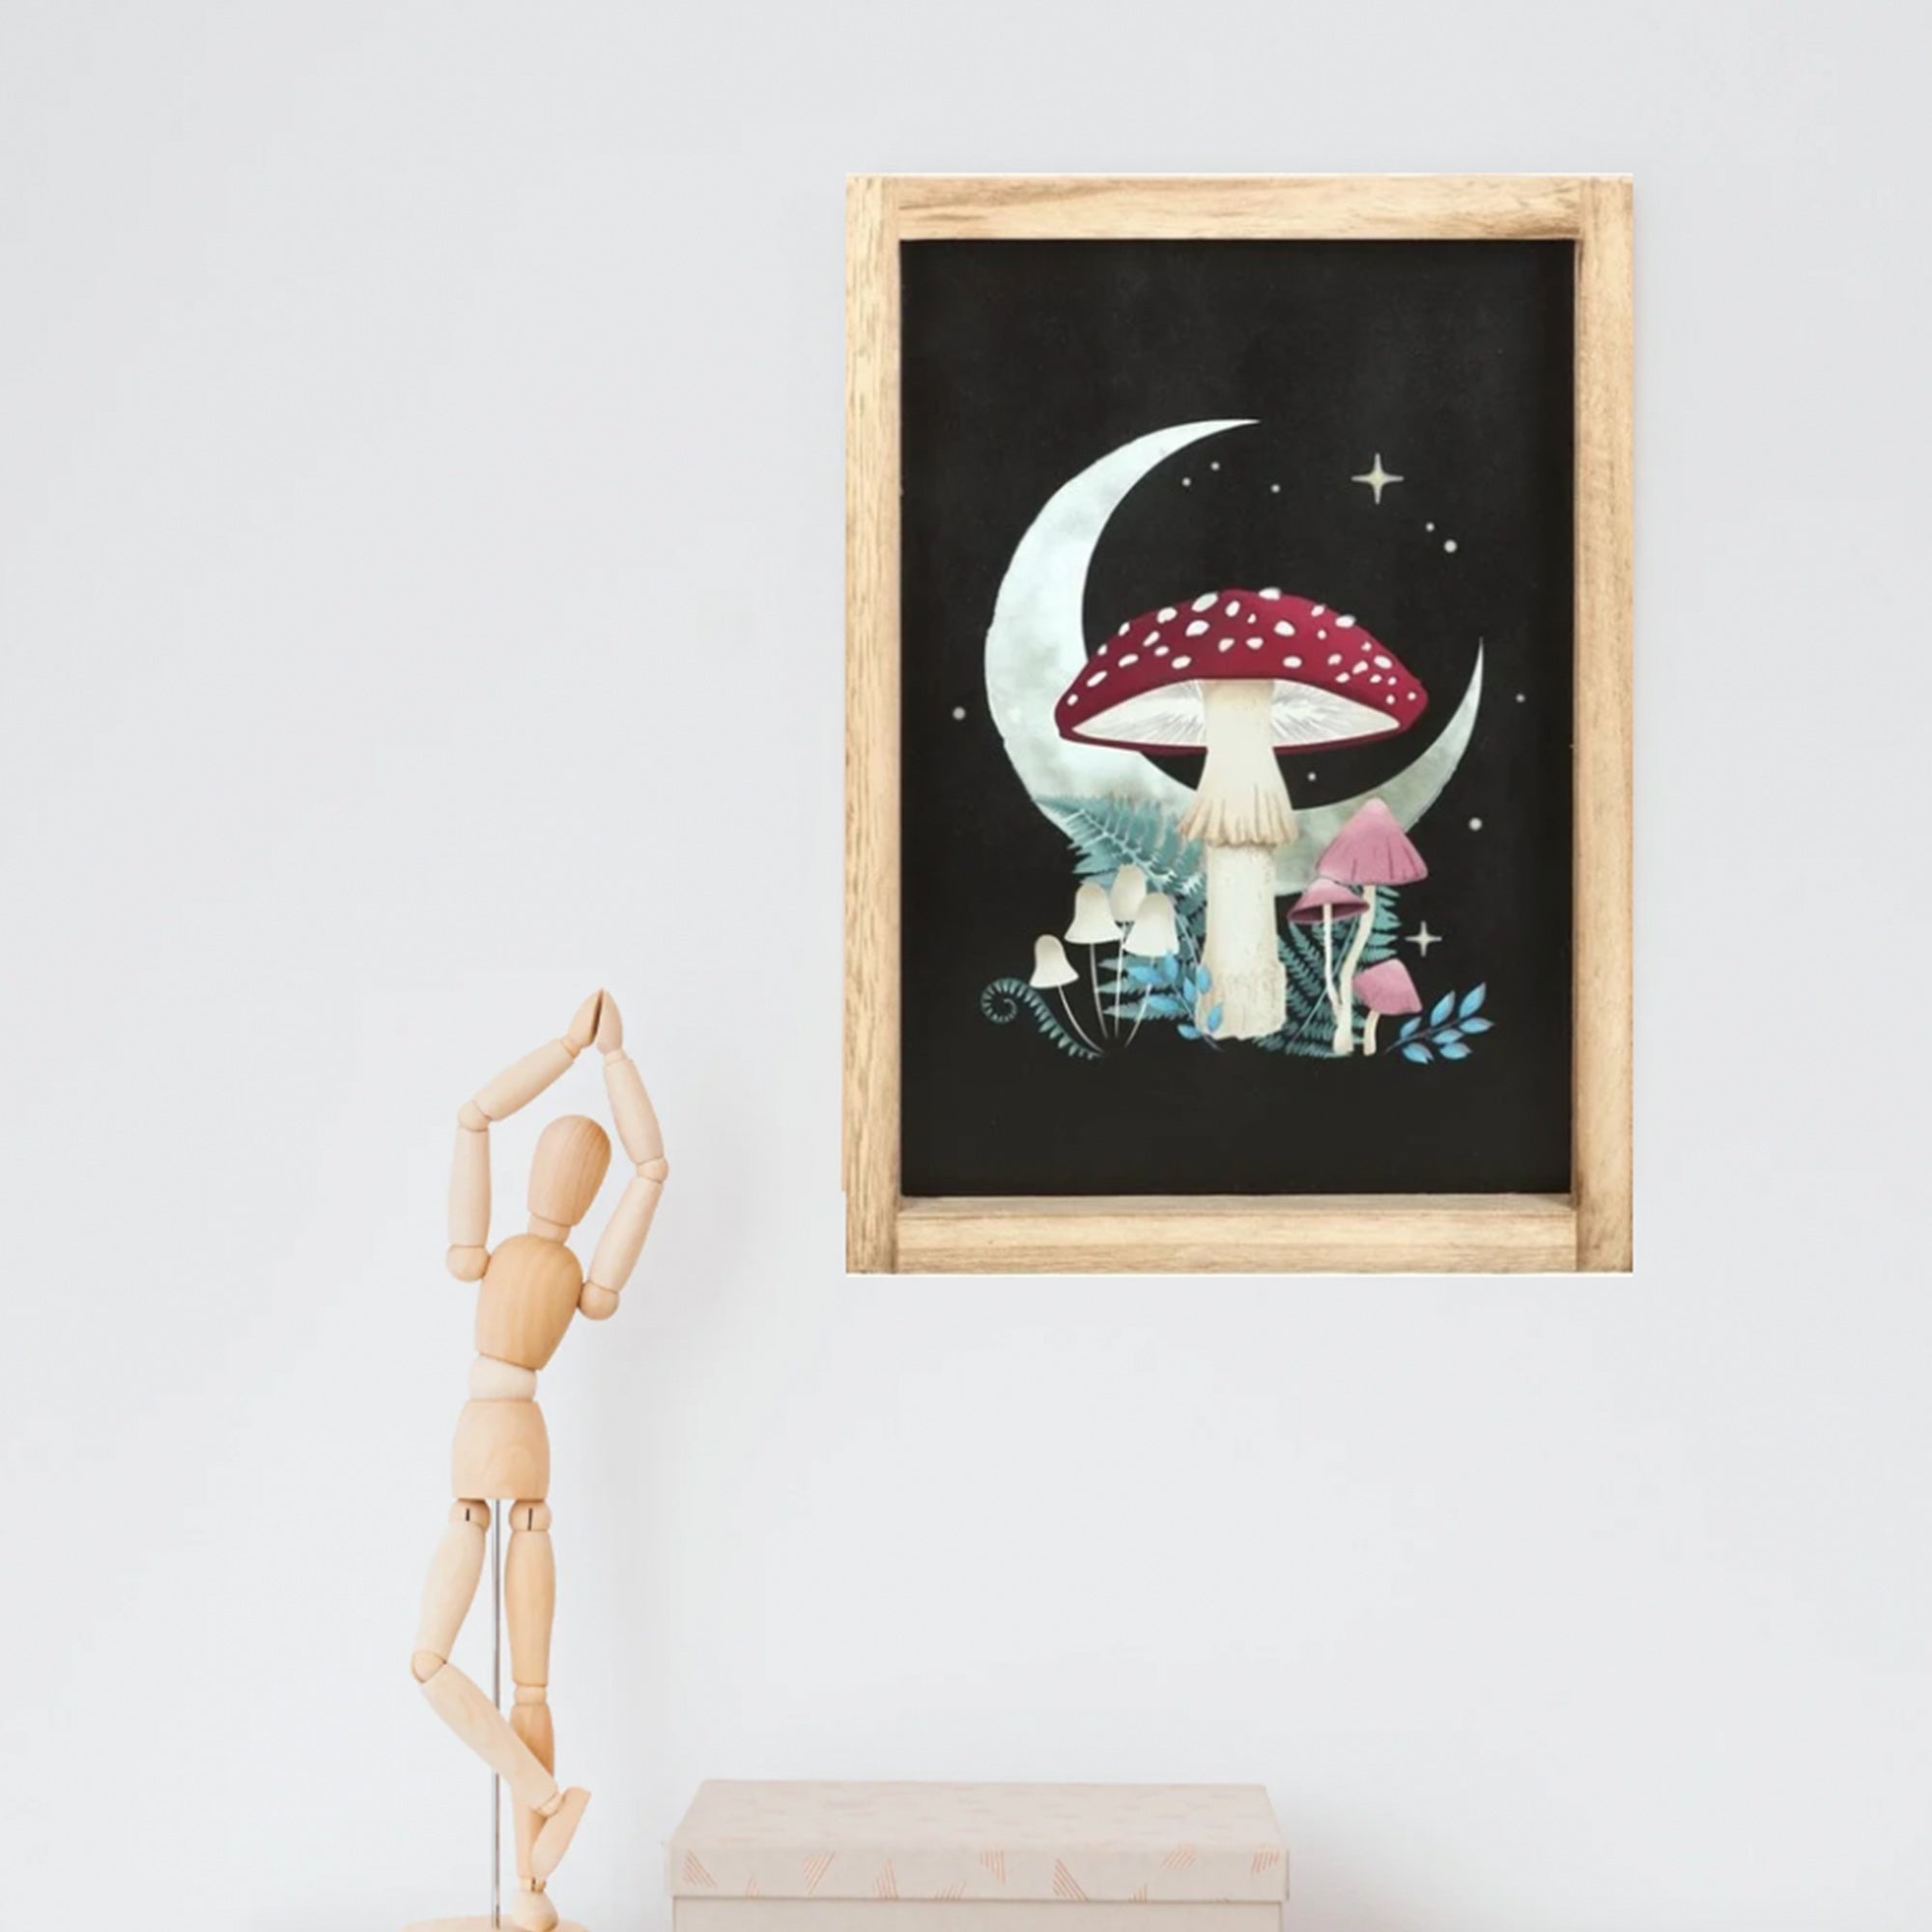 Fairytale Toadstool Framed Print - Woodland Mushroom Wall Art - Hanging Mushroom Art